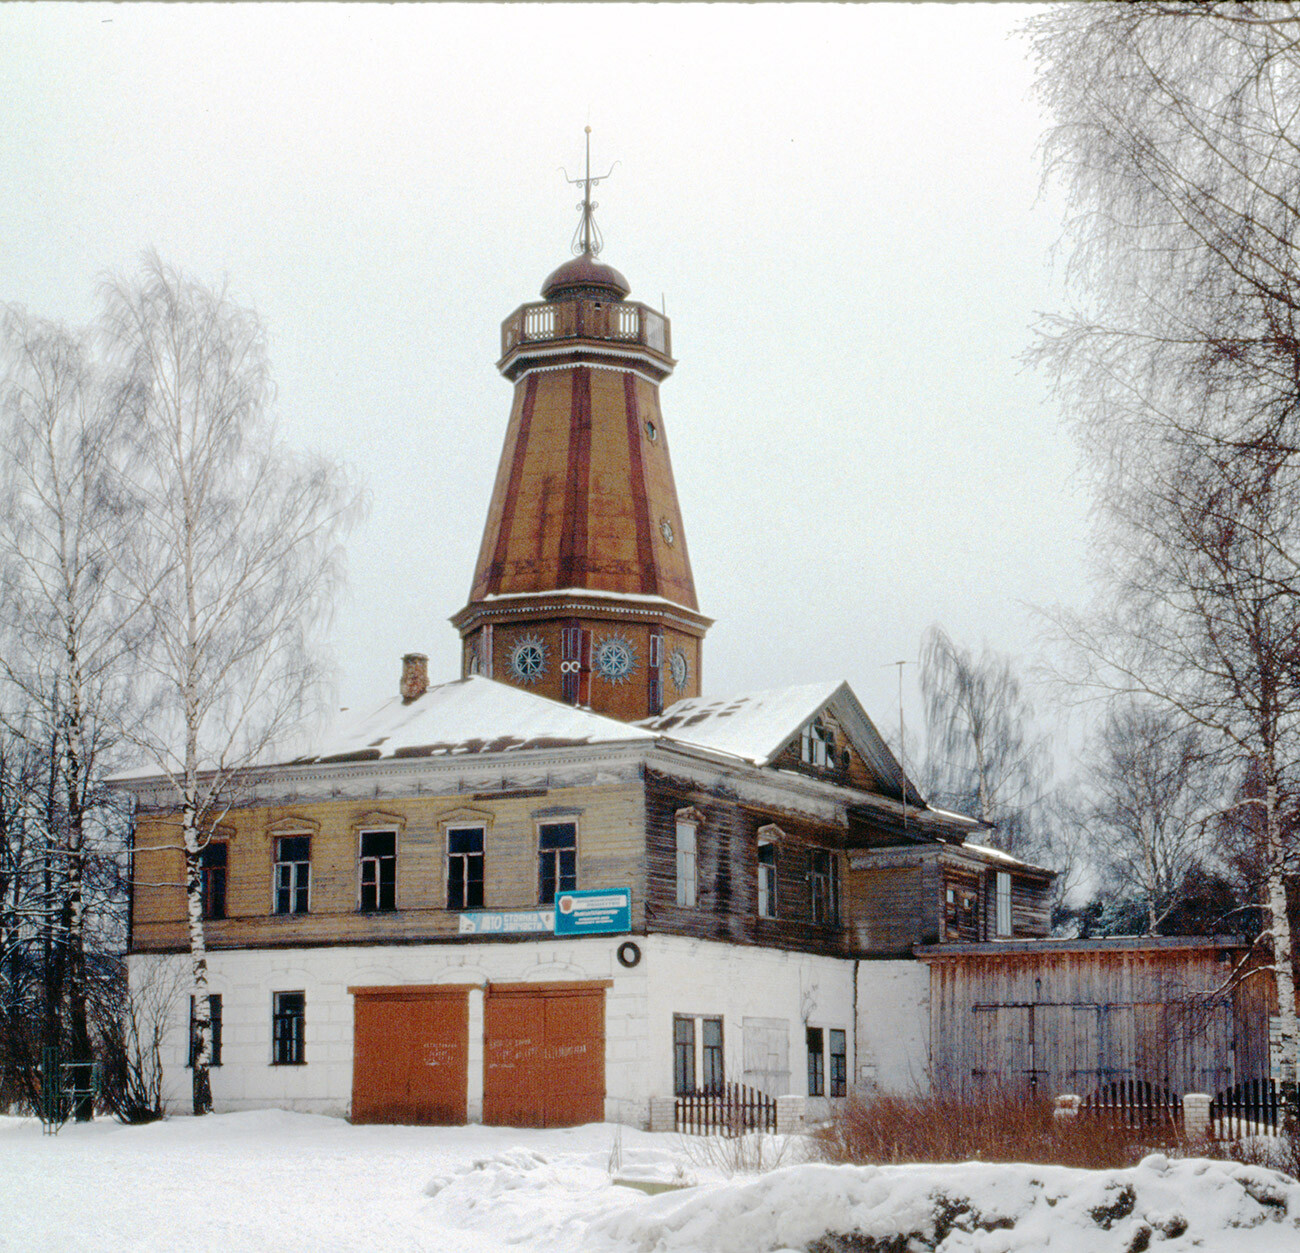 Antiguo edificio del Ayuntamiento (duma) con torre de bomberos. Toda la estructura de madera de este monumento nacional, construido en 1887, ardió a finales de 2000. 10 de marzo de 1998